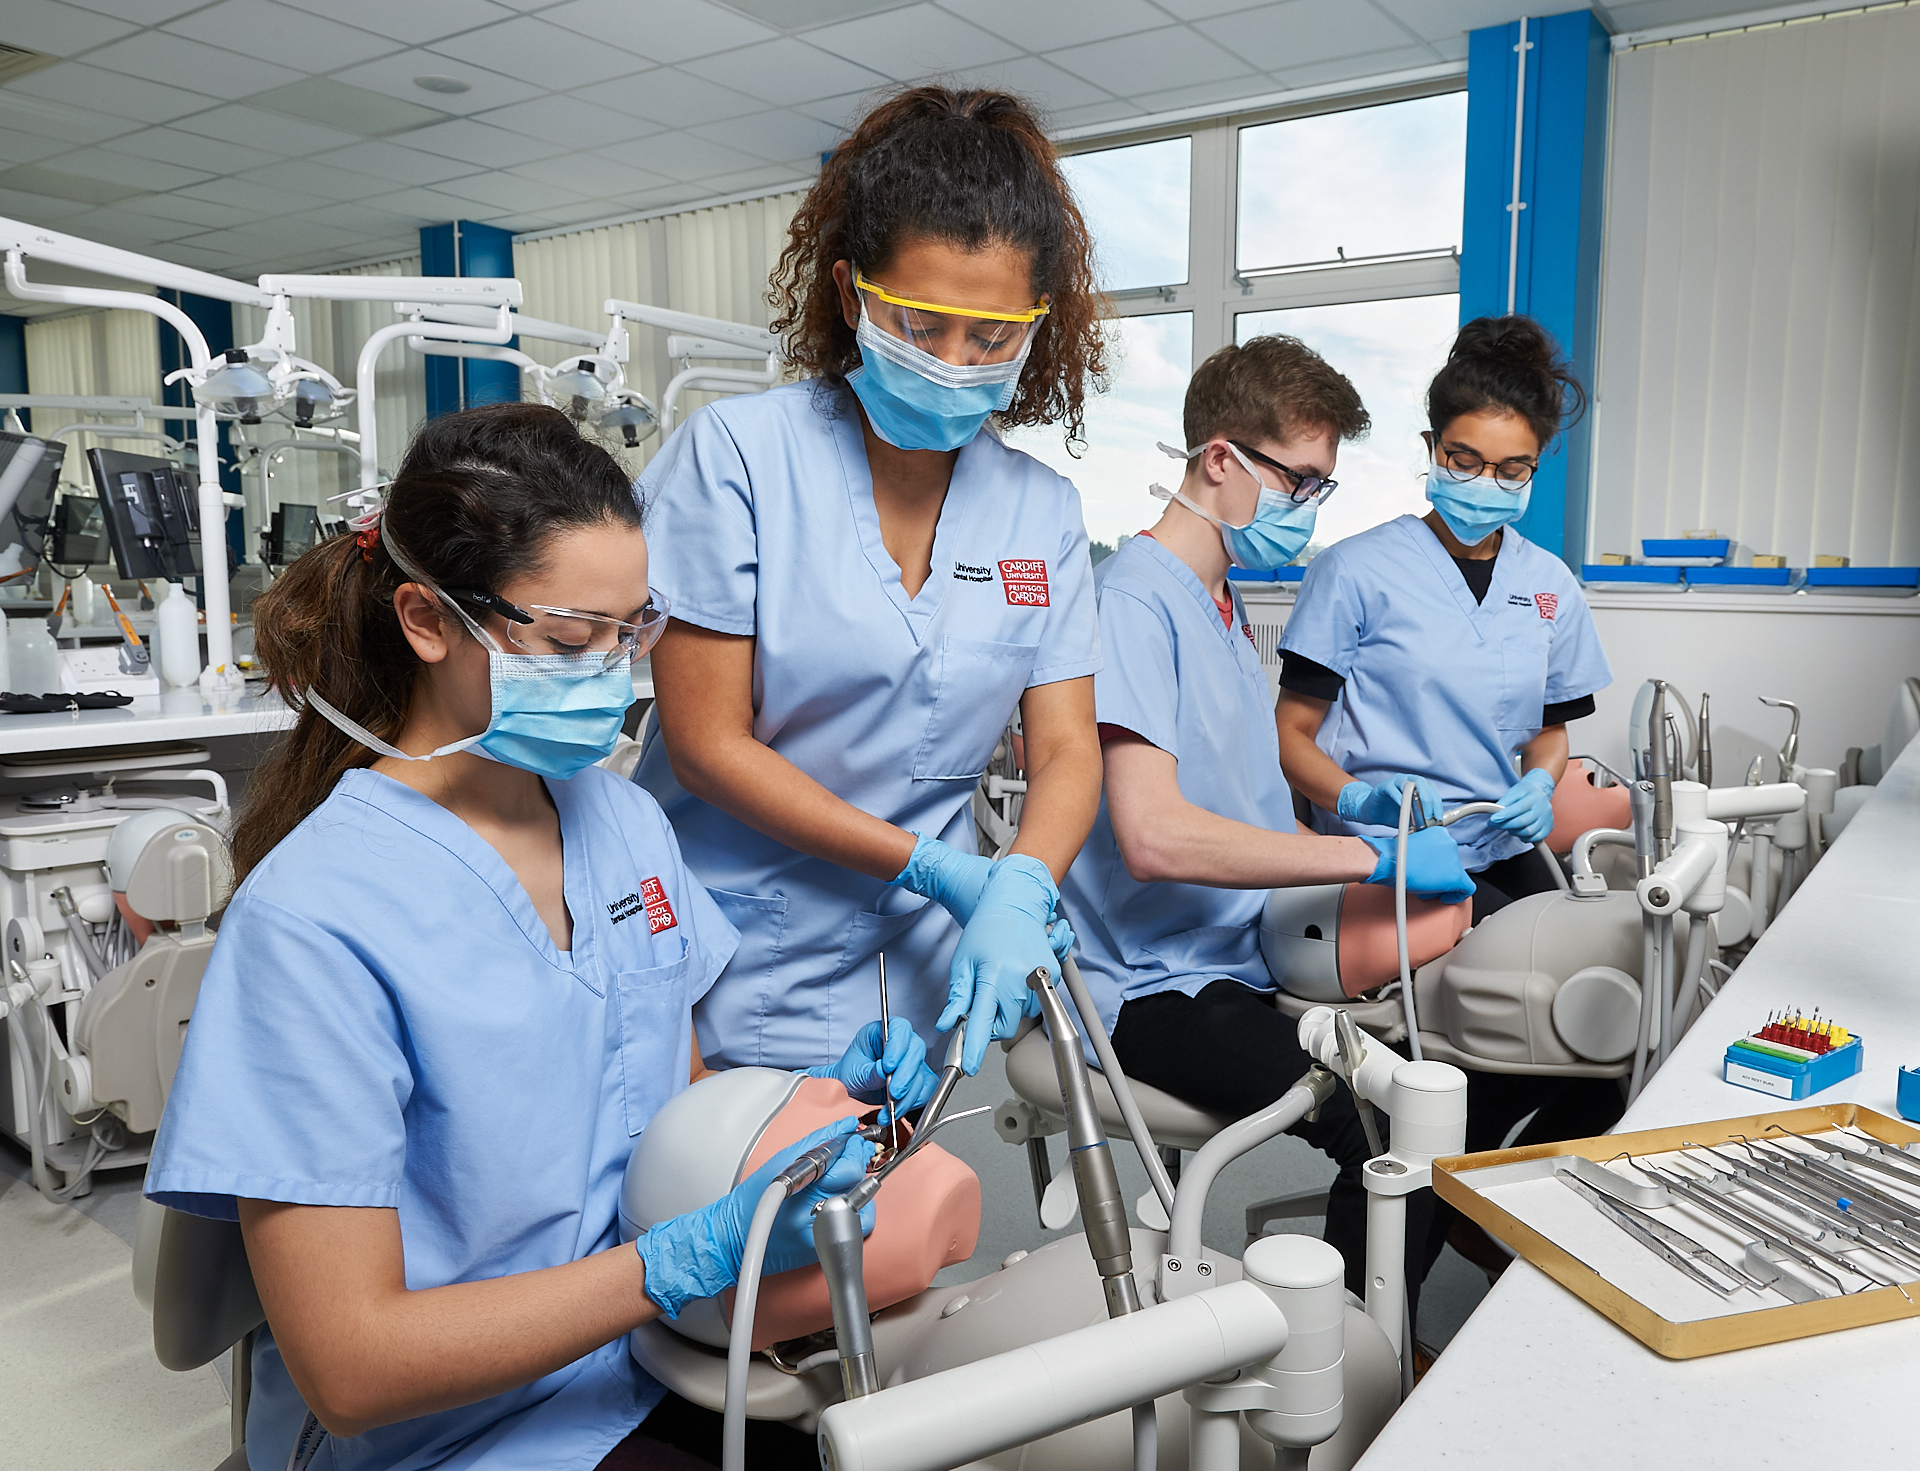 Dental hygienist jobs in cardiff